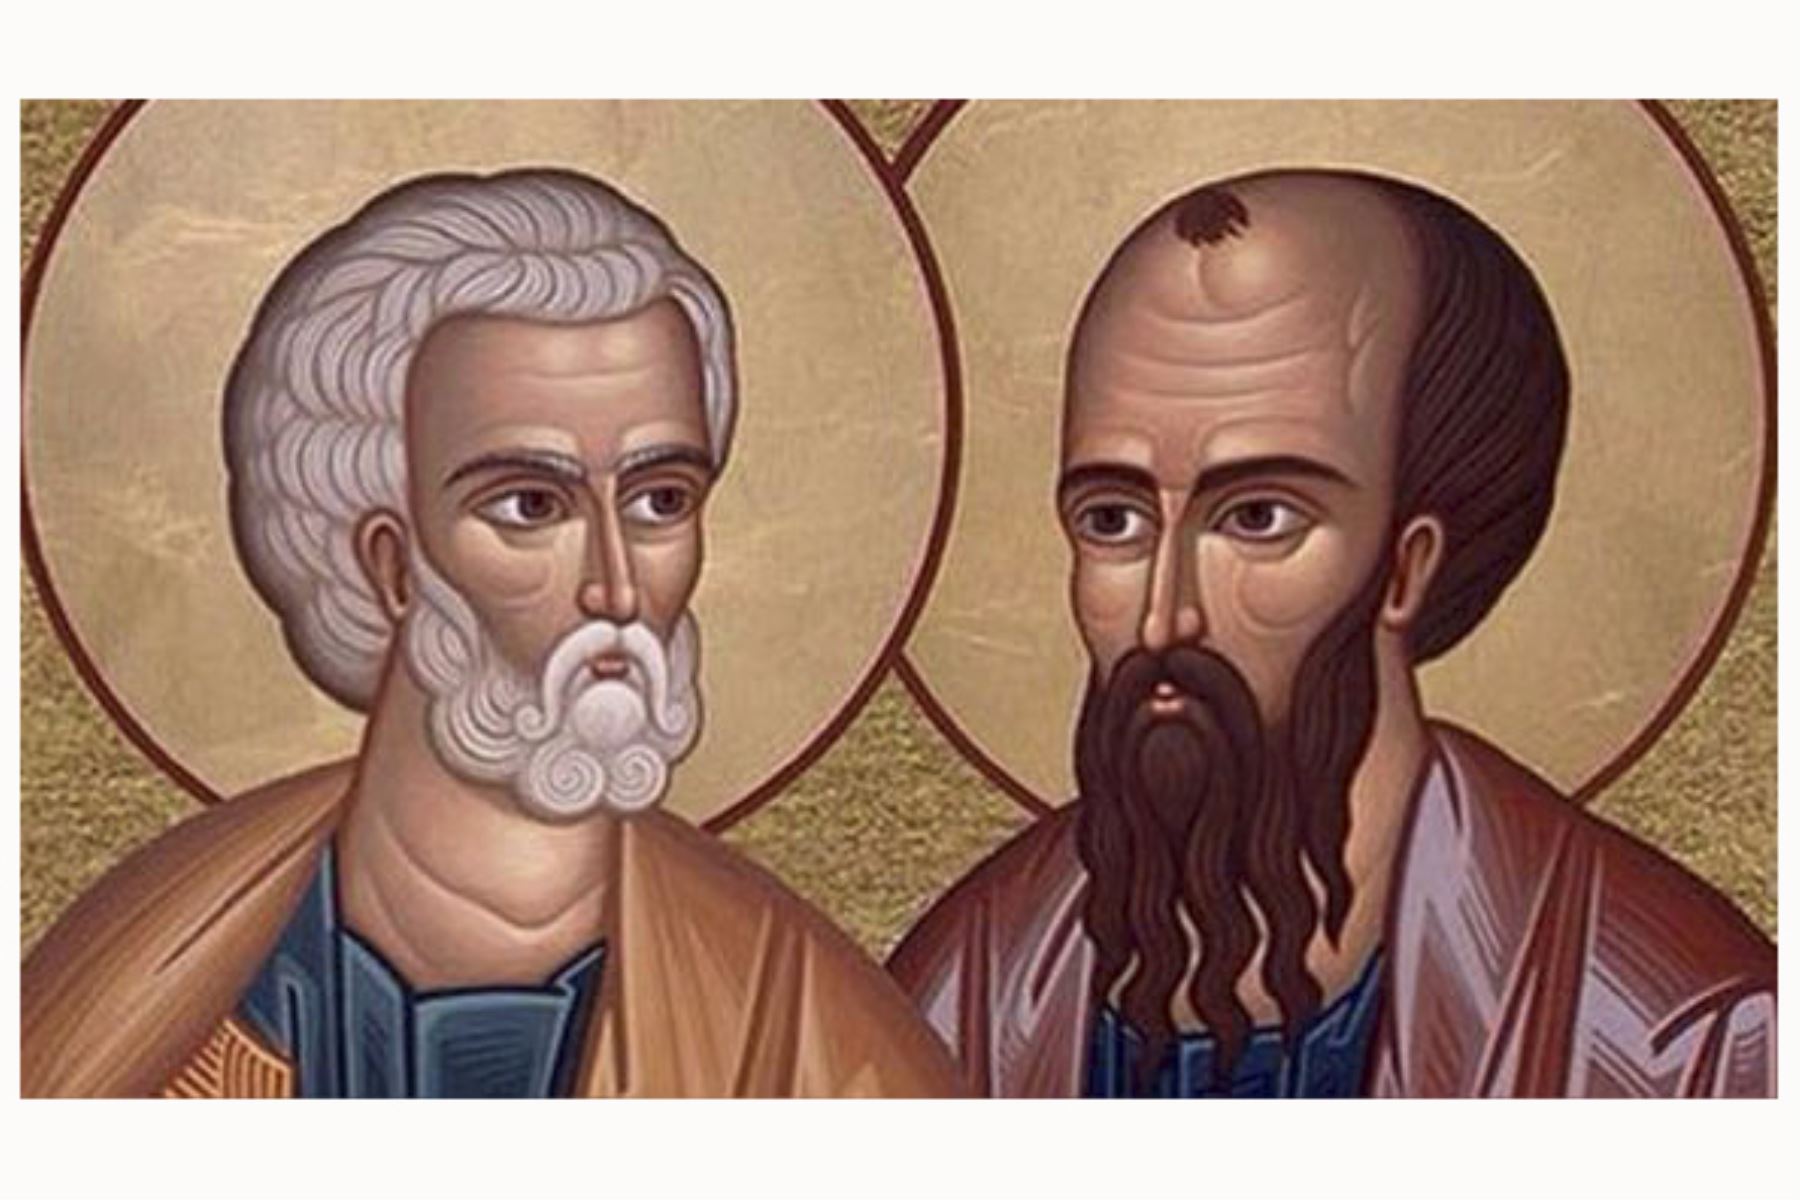 San Pedro y san Pablo, dos apóstoles fundamentales para la Iglesia católica, sufrieron martirio por su labor evangelizadora. Foto: internet/medios.